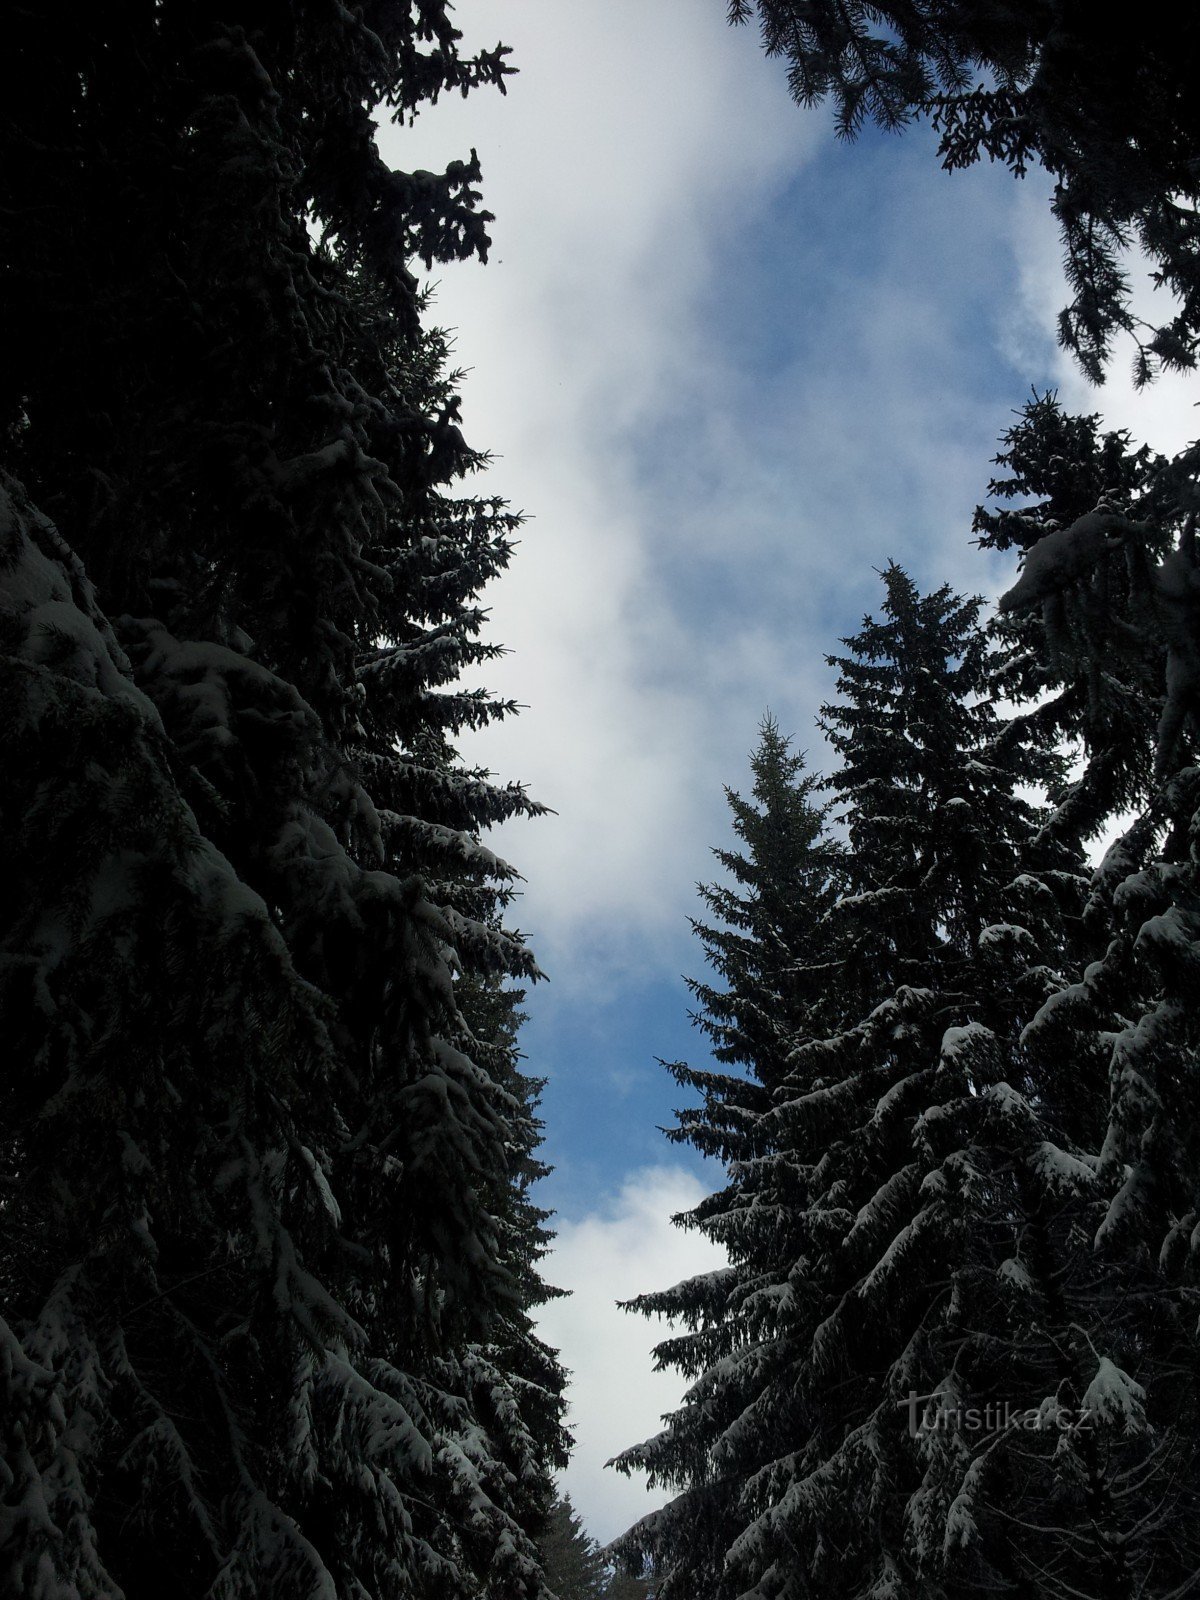 Paseo invernal desde Beneck hasta el mirador de Žalý y vuelta